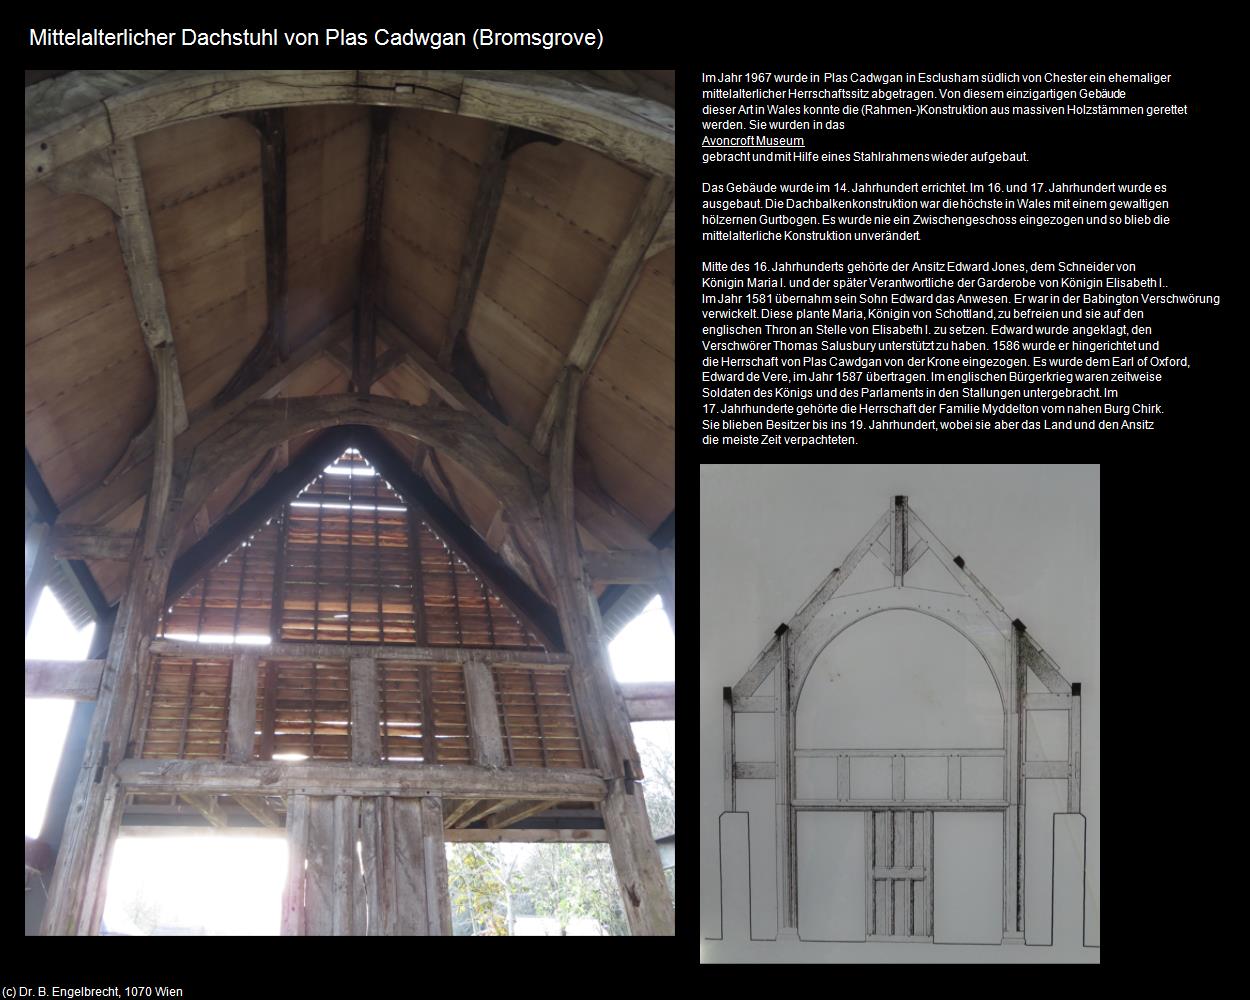 Mittelalterlicher Dachstuhl von Plas Cadwgan (Bromsgrove, England) in Kulturatlas-ENGLAND und WALES(c)B.Engelbrecht